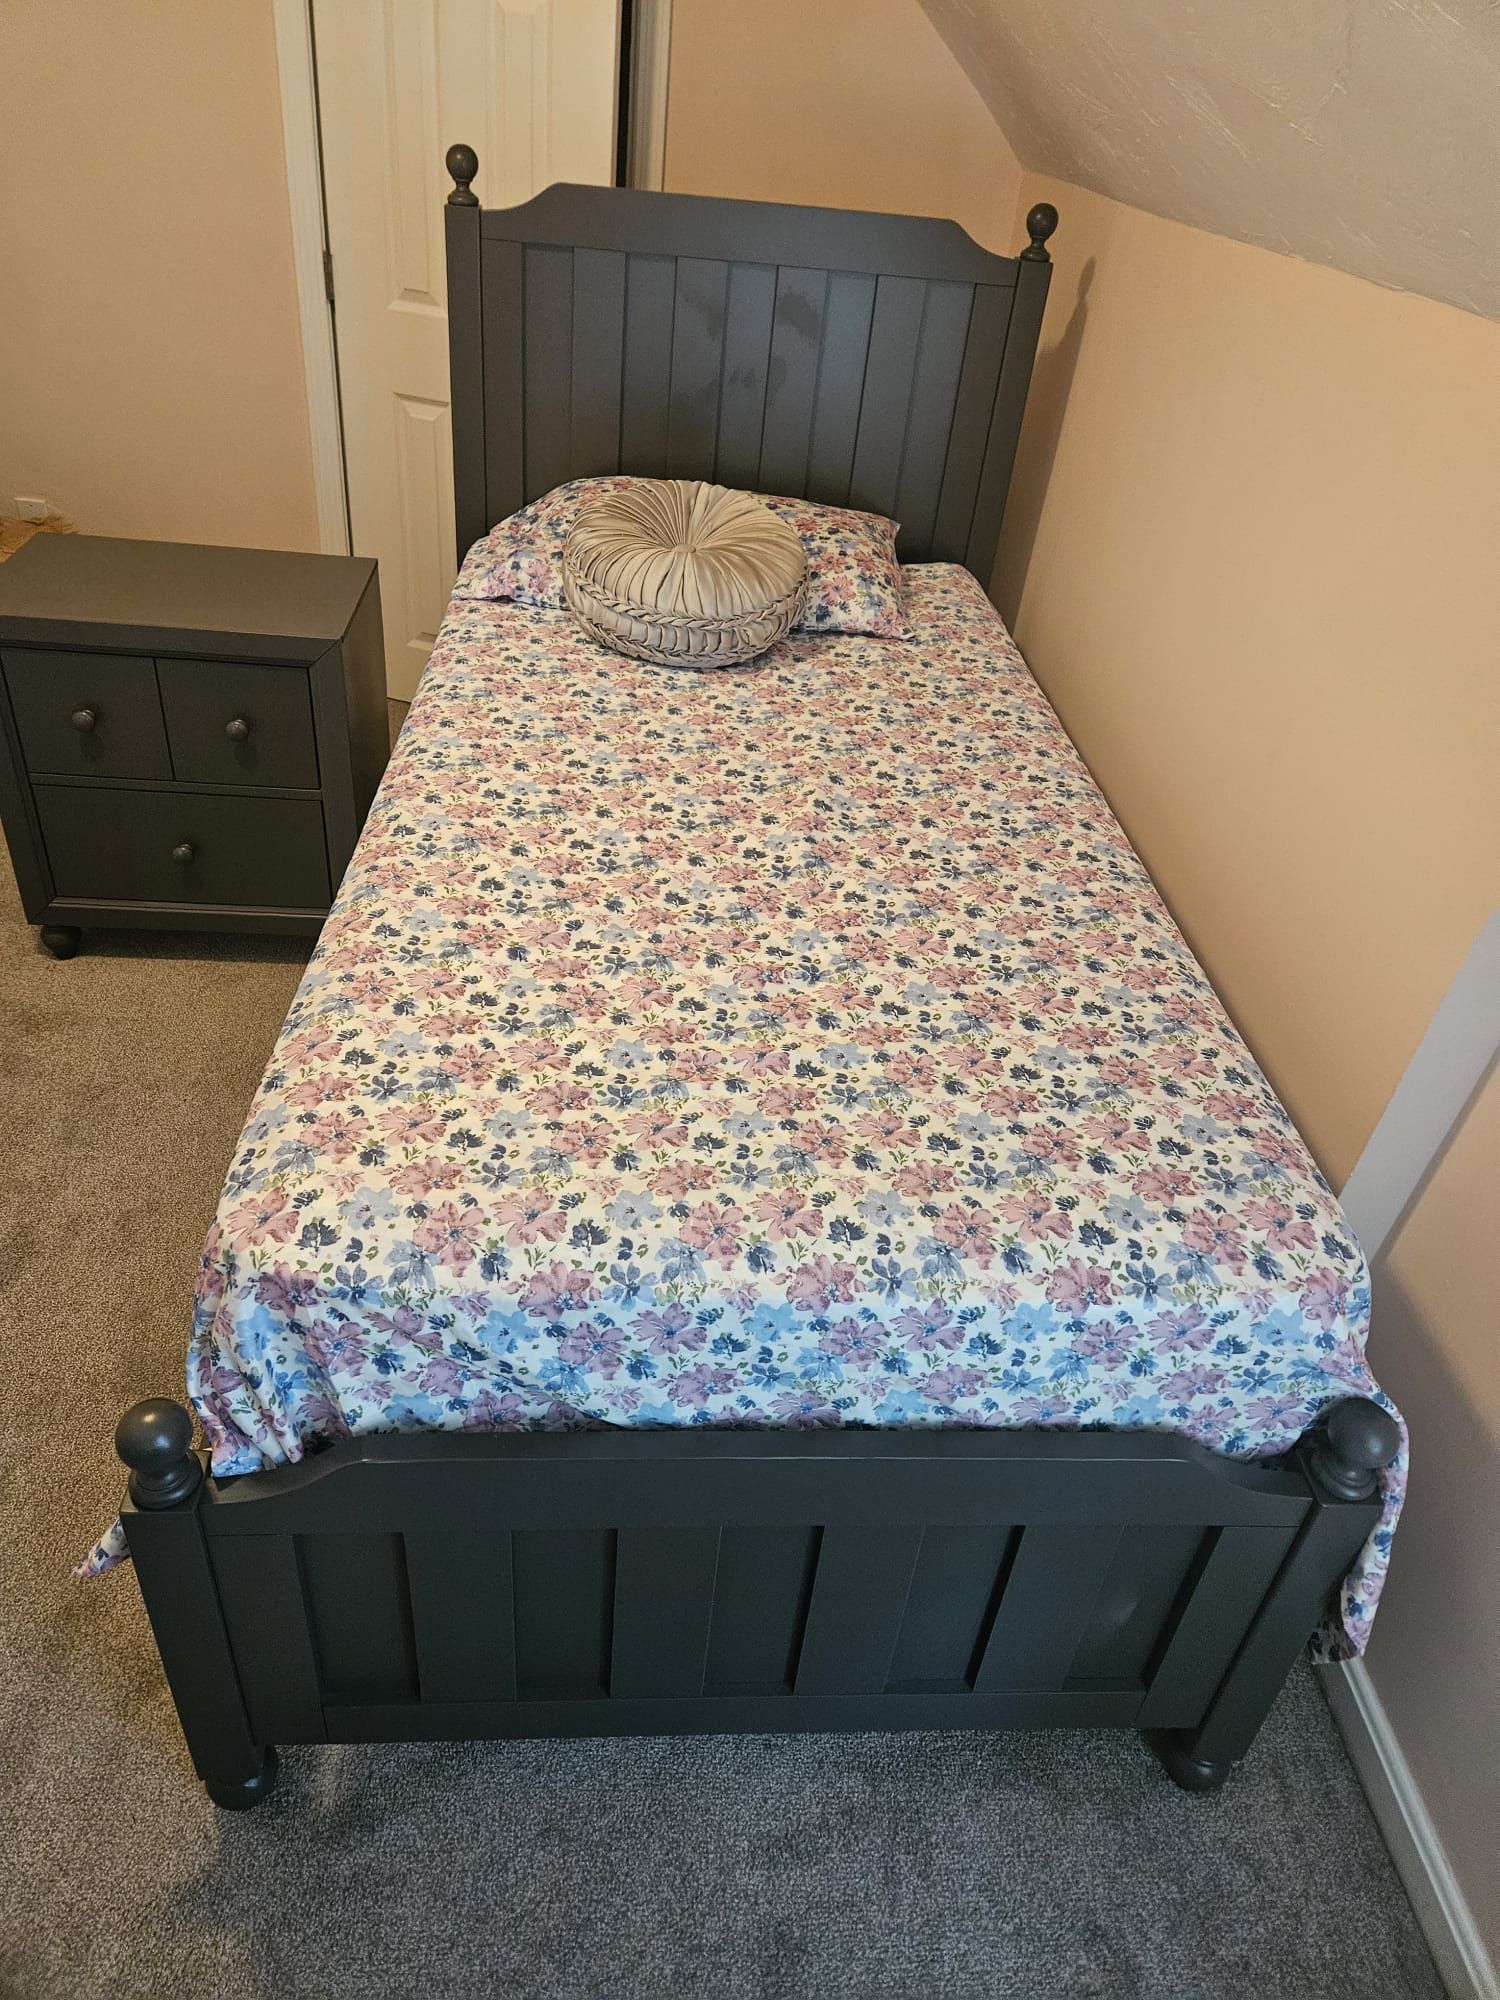 Twin Bedroom Set